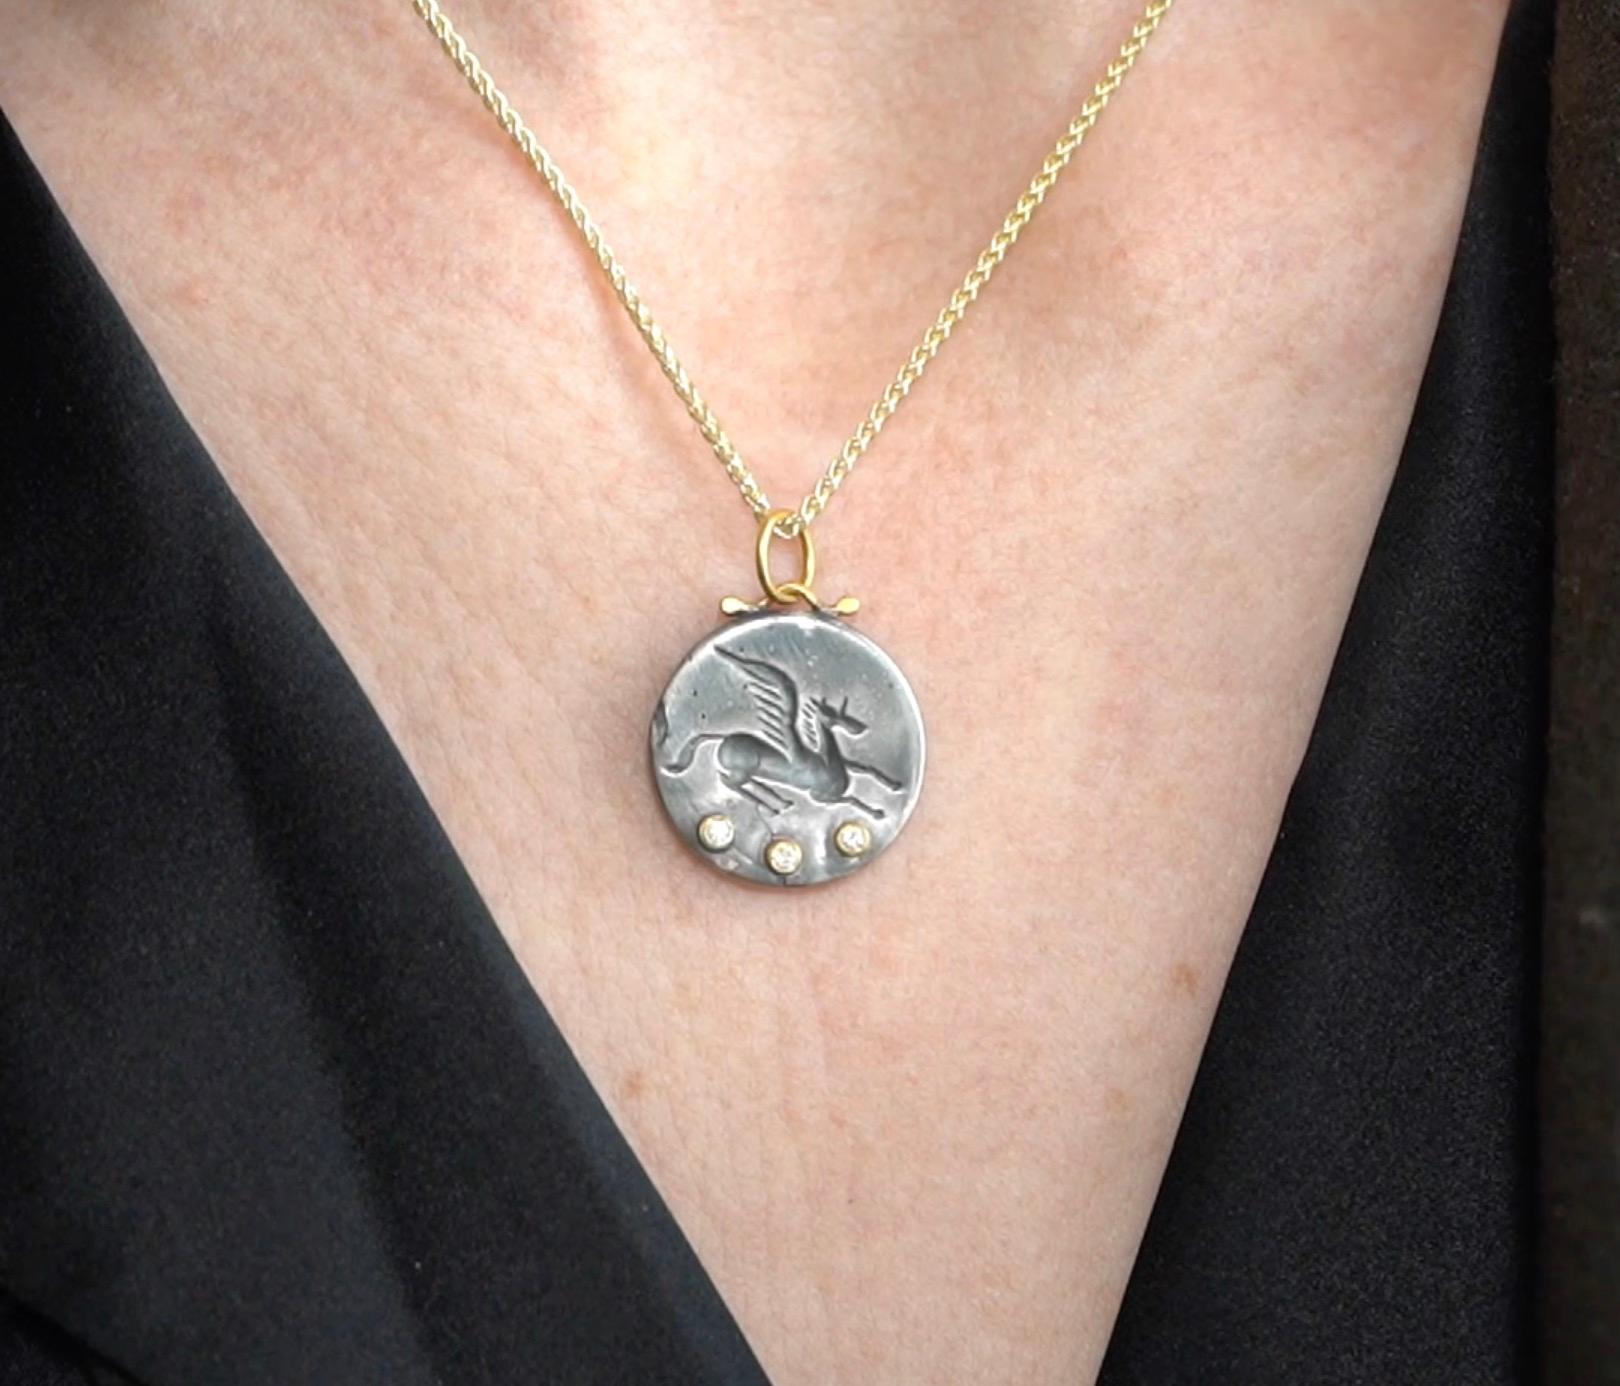 Medium Pegasus Münze Charme Amulett Anhänger Halskette mit drei Diamanten, 24kt Gold und Silber von Prehistoric Works of Istanbul, Türkei. Diamanten - 0,06cts. Diese Münzamulette lassen sich gut allein oder mit anderen Münzanhängern oder